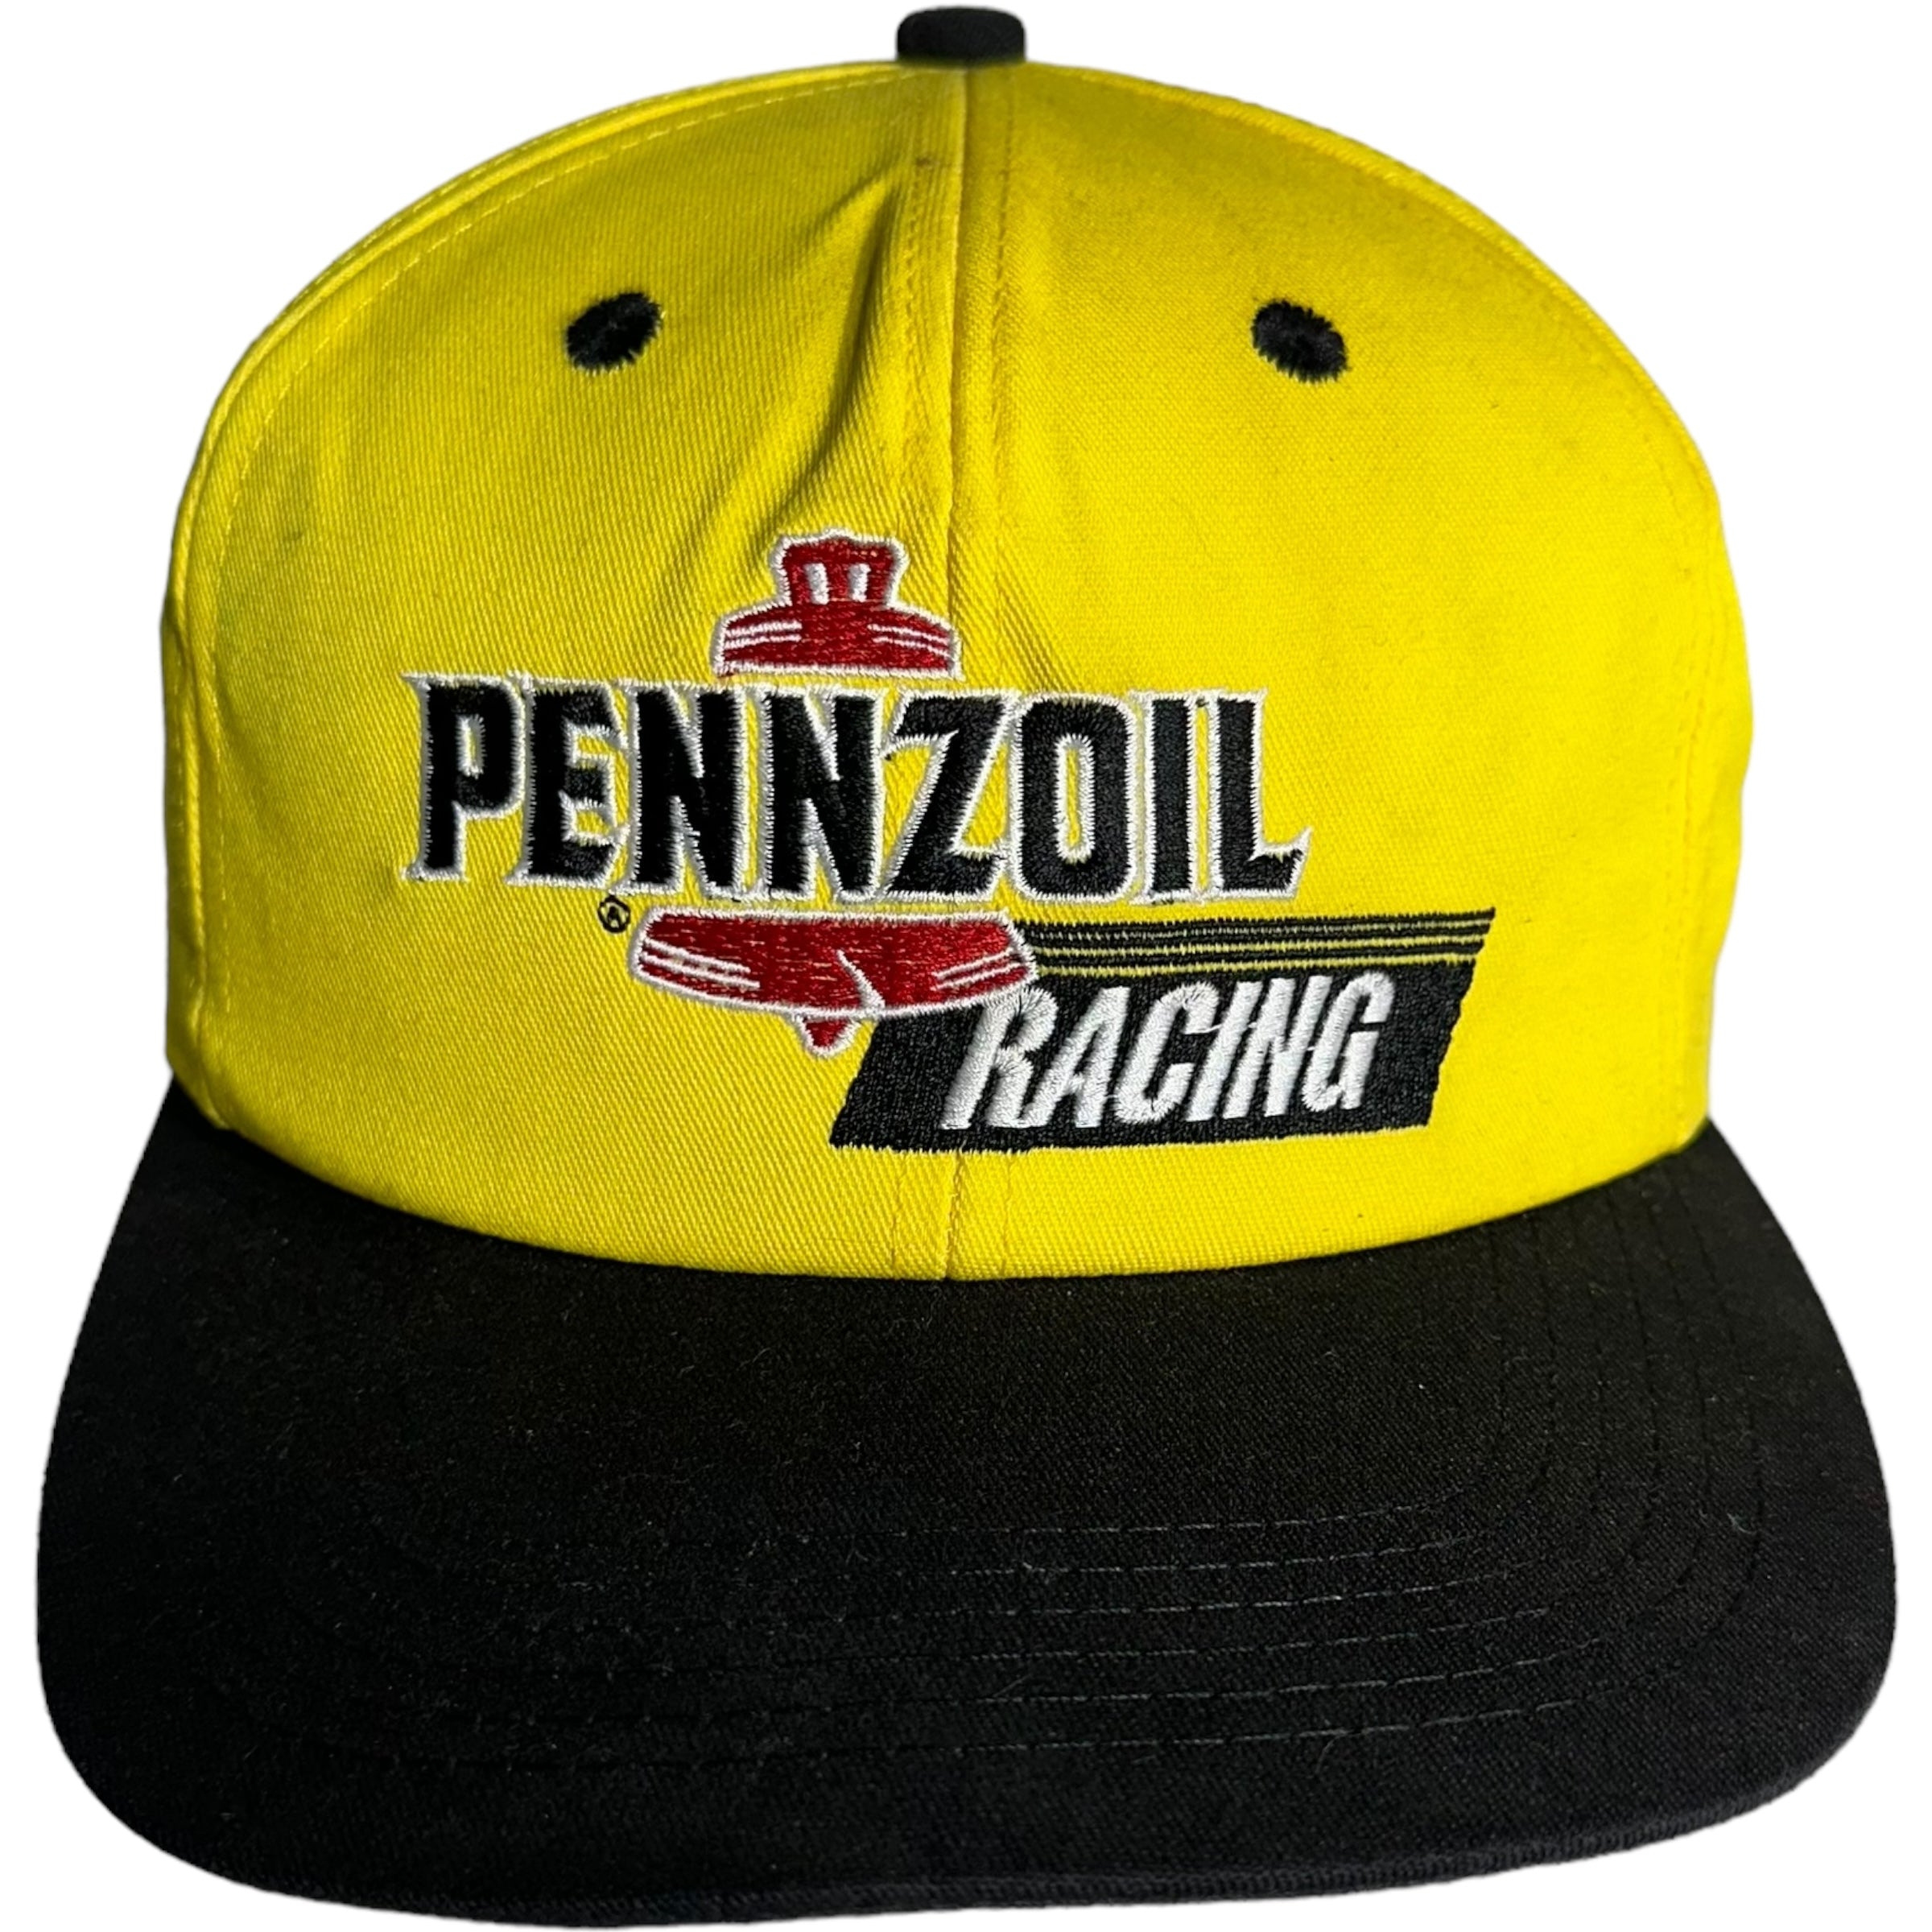 Vintage Pennzoil Racing Snapback Hat